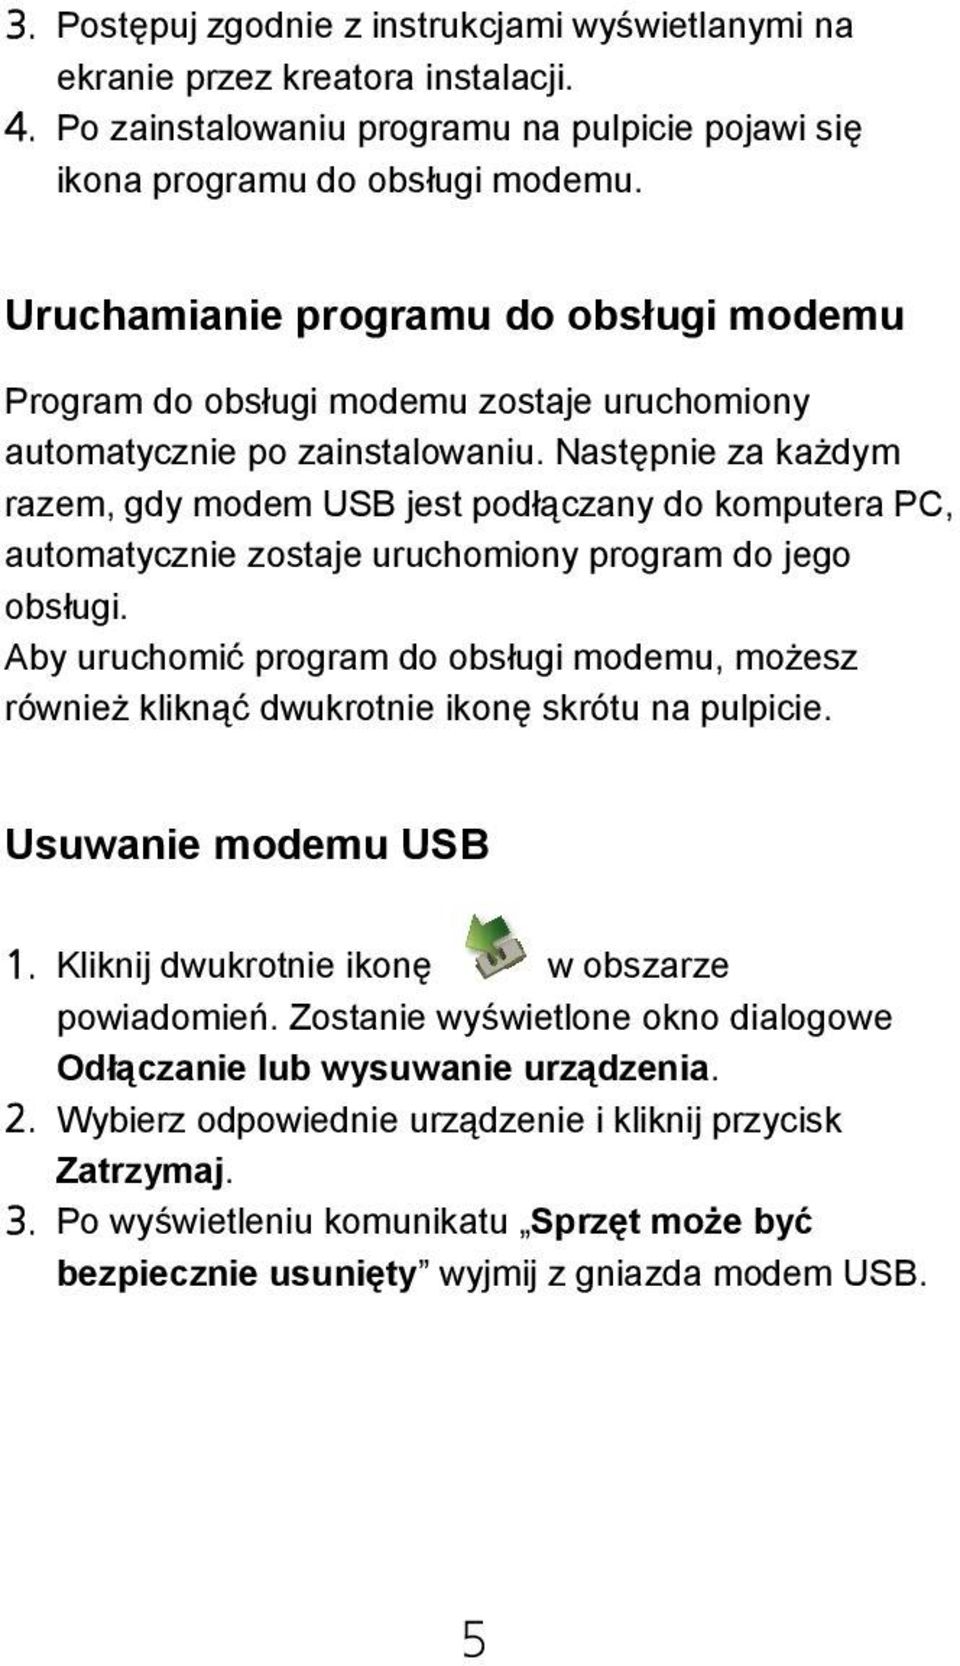 Następnie za każdym razem, gdy modem USB jest podłączany do komputera PC, automatycznie zostaje uruchomiony program do jego obsługi.